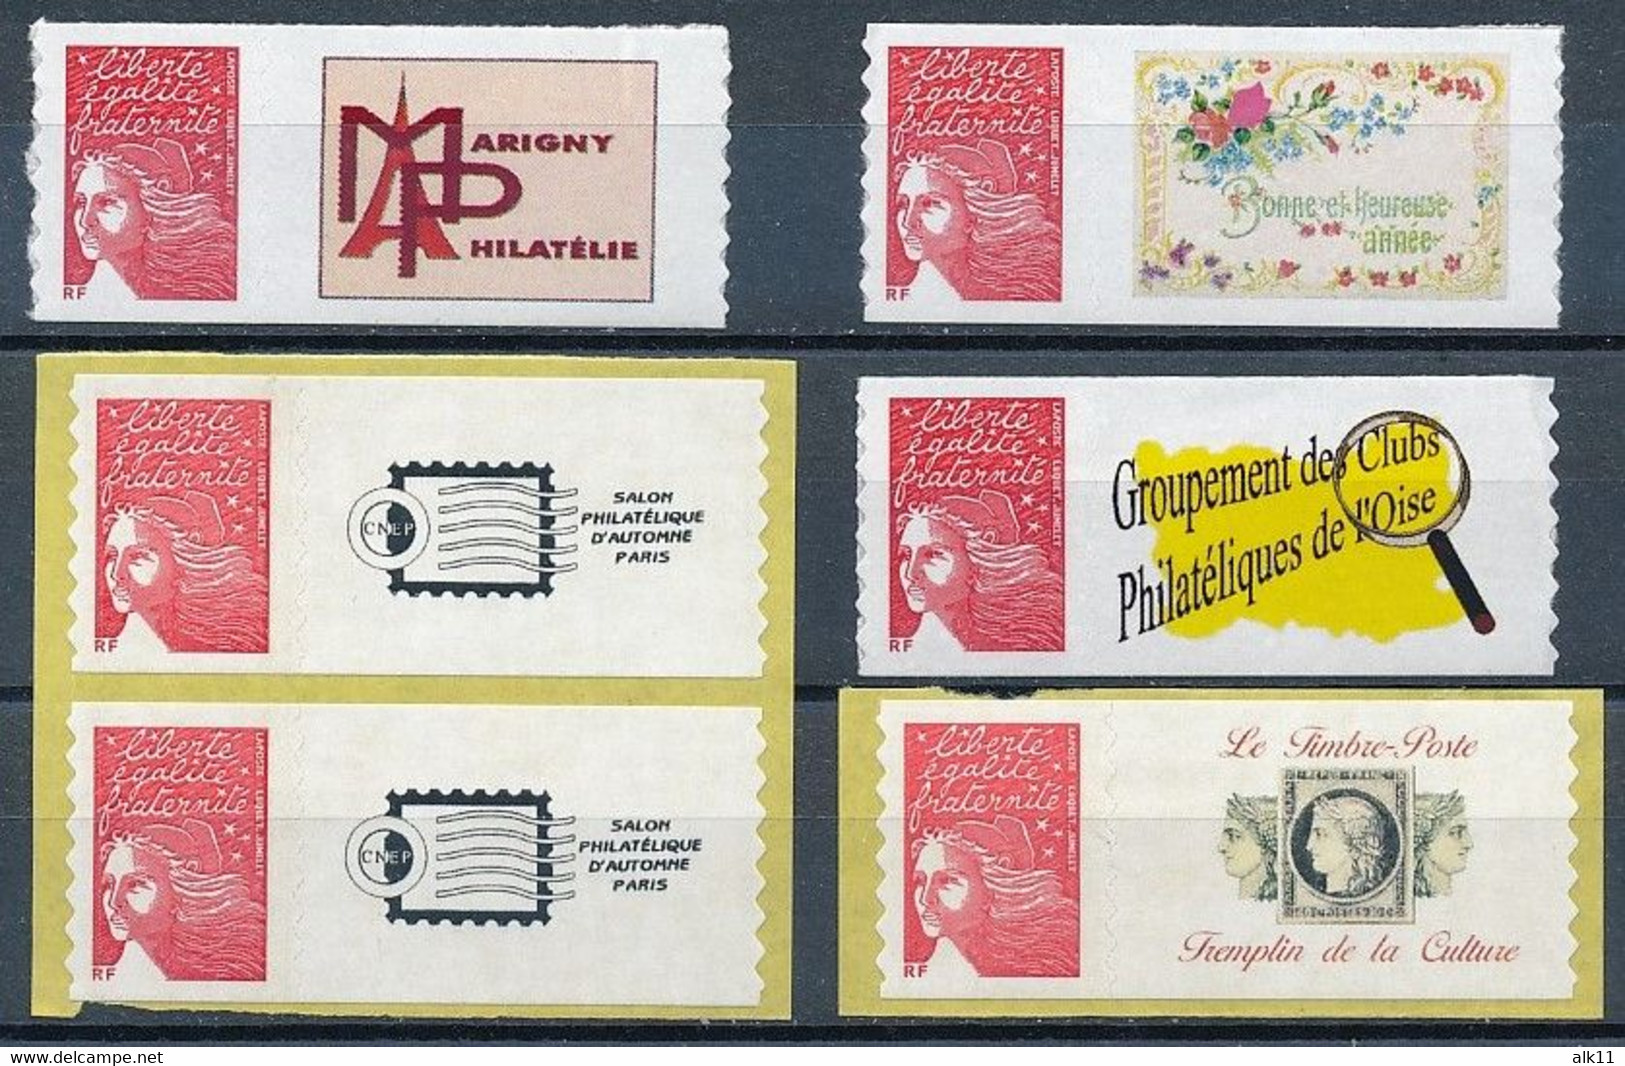 France 2004 - 3729A (3x) - 3729Ac (3x) Timbres Adhésifs Personnalisés Marianne Du 14 Juillet - Neuf - Unused Stamps